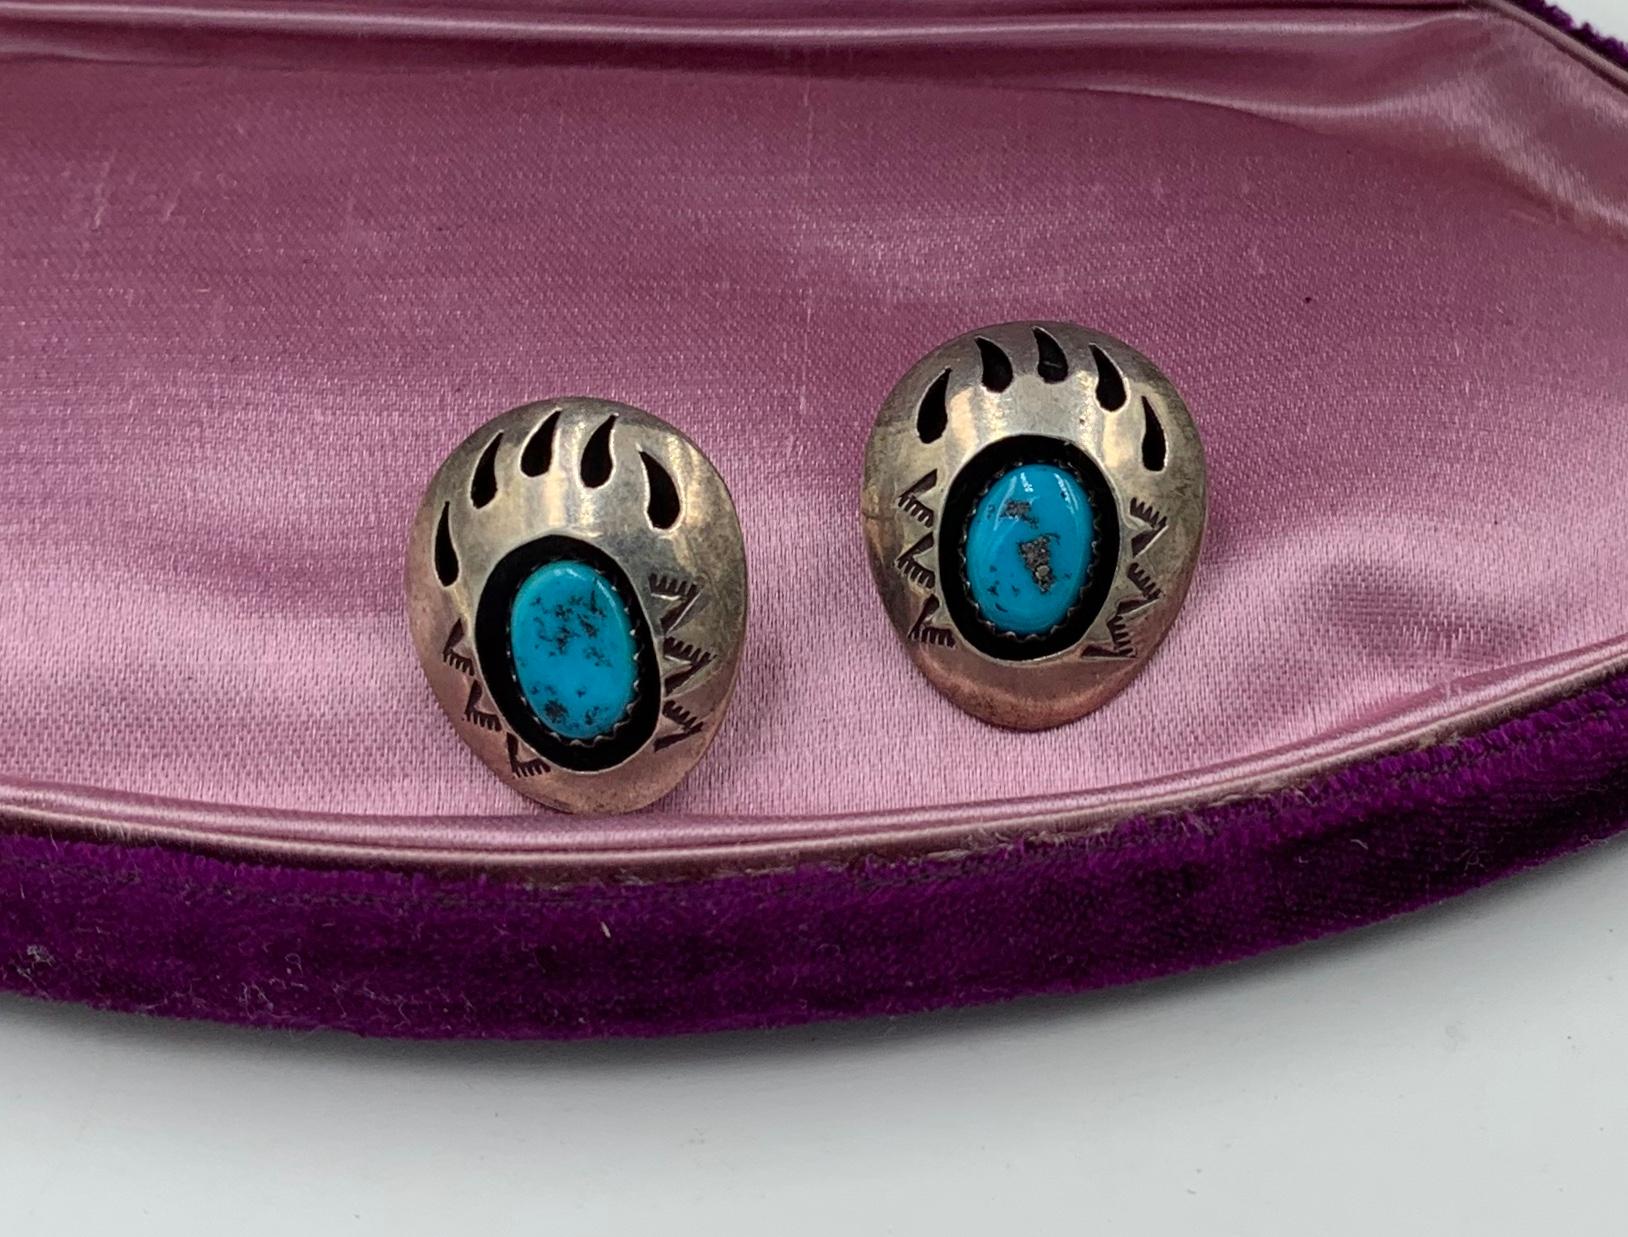 Ein atemberaubendes Paar antiker Navajo-Türkis-Schattenbox-Bärentatzen-Ohrringe, signiert von Navajo-Künstler Teddy Goodluck.  Die Ohrringe mit dem Bärentatzen-Motiv mit dem schönen Türkis in der gewölbten Shadowbox-Optik.  Die Ohrringe sind mit dem